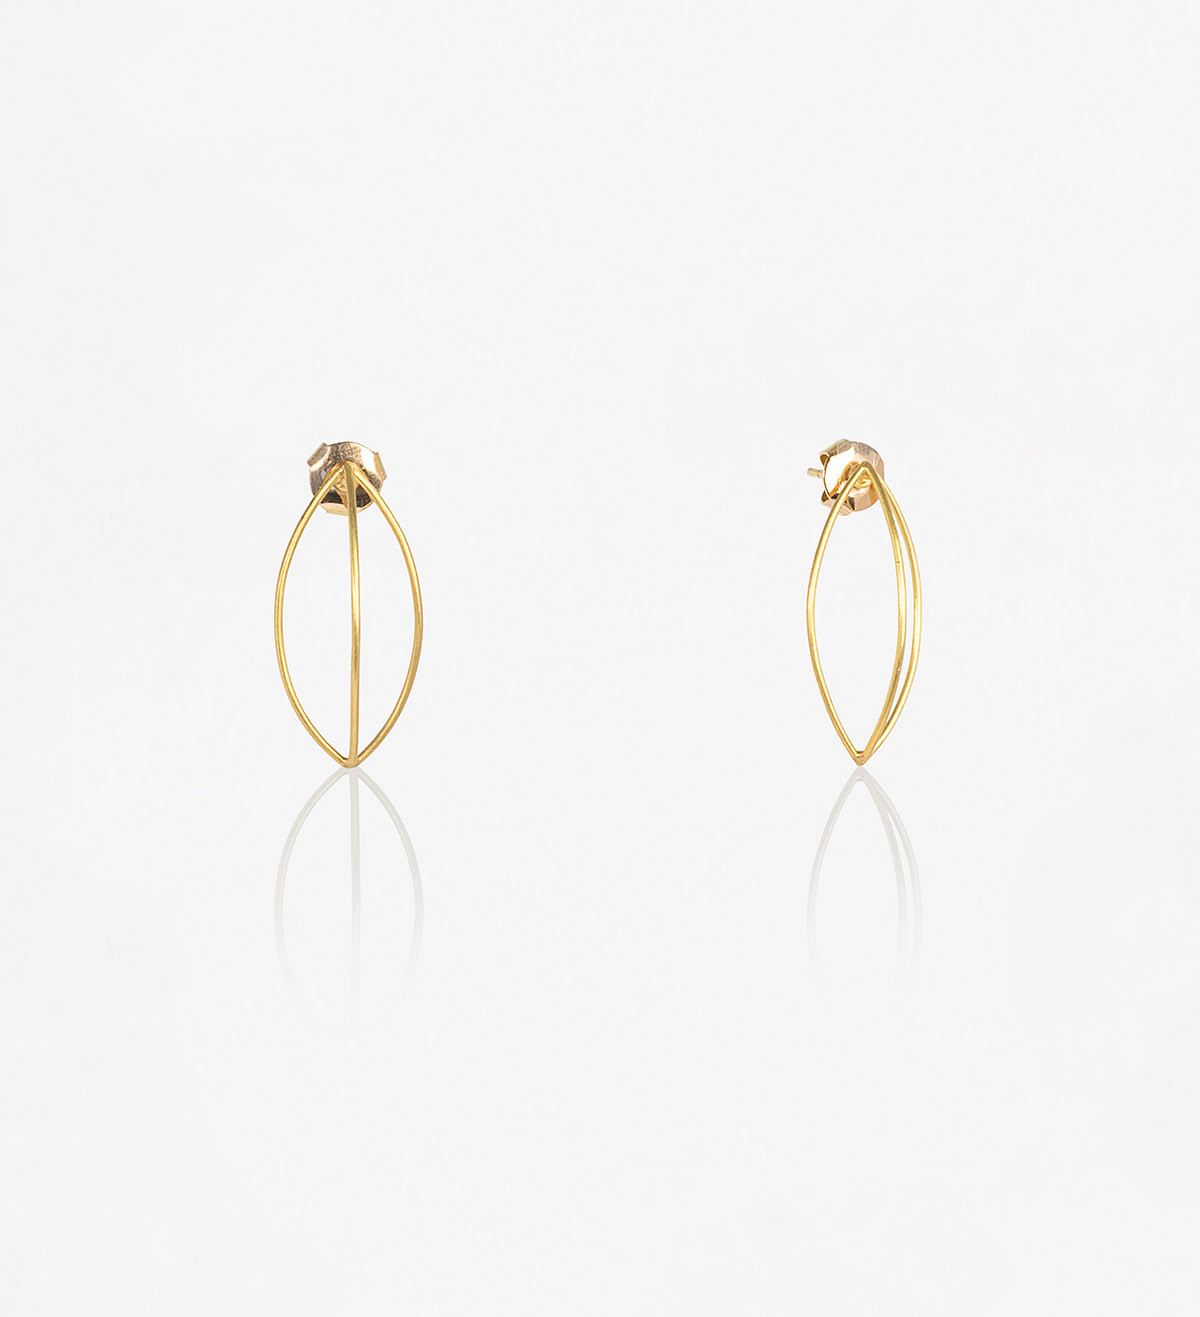 18k gold earrings Bots Fil 36mm